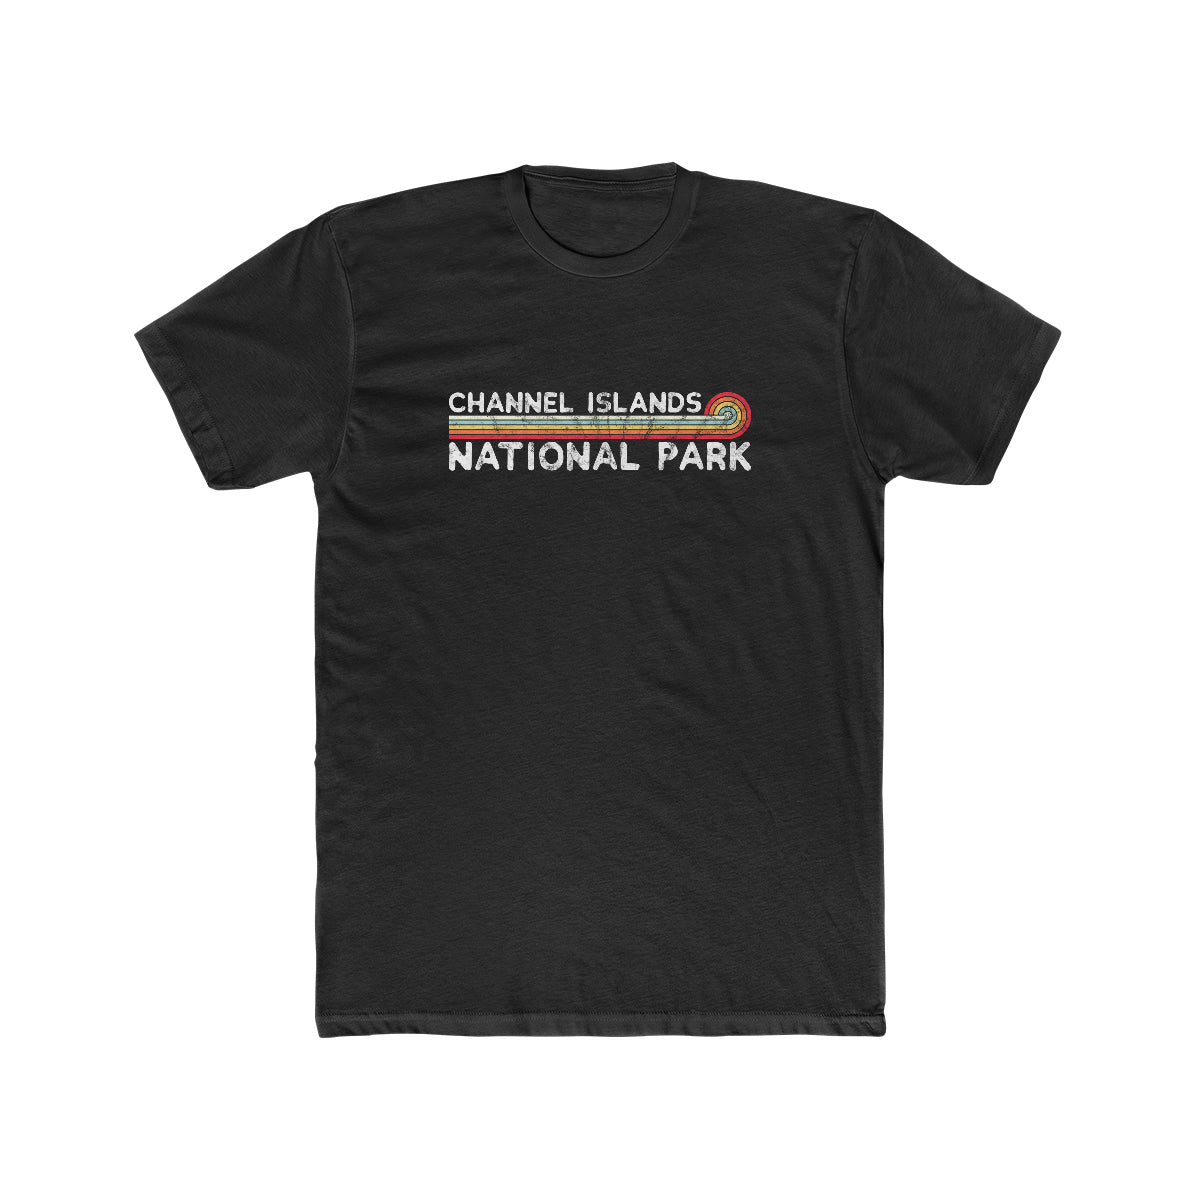 Channel Islands National Park T-Shirt - Vintage Stretched Sunrise